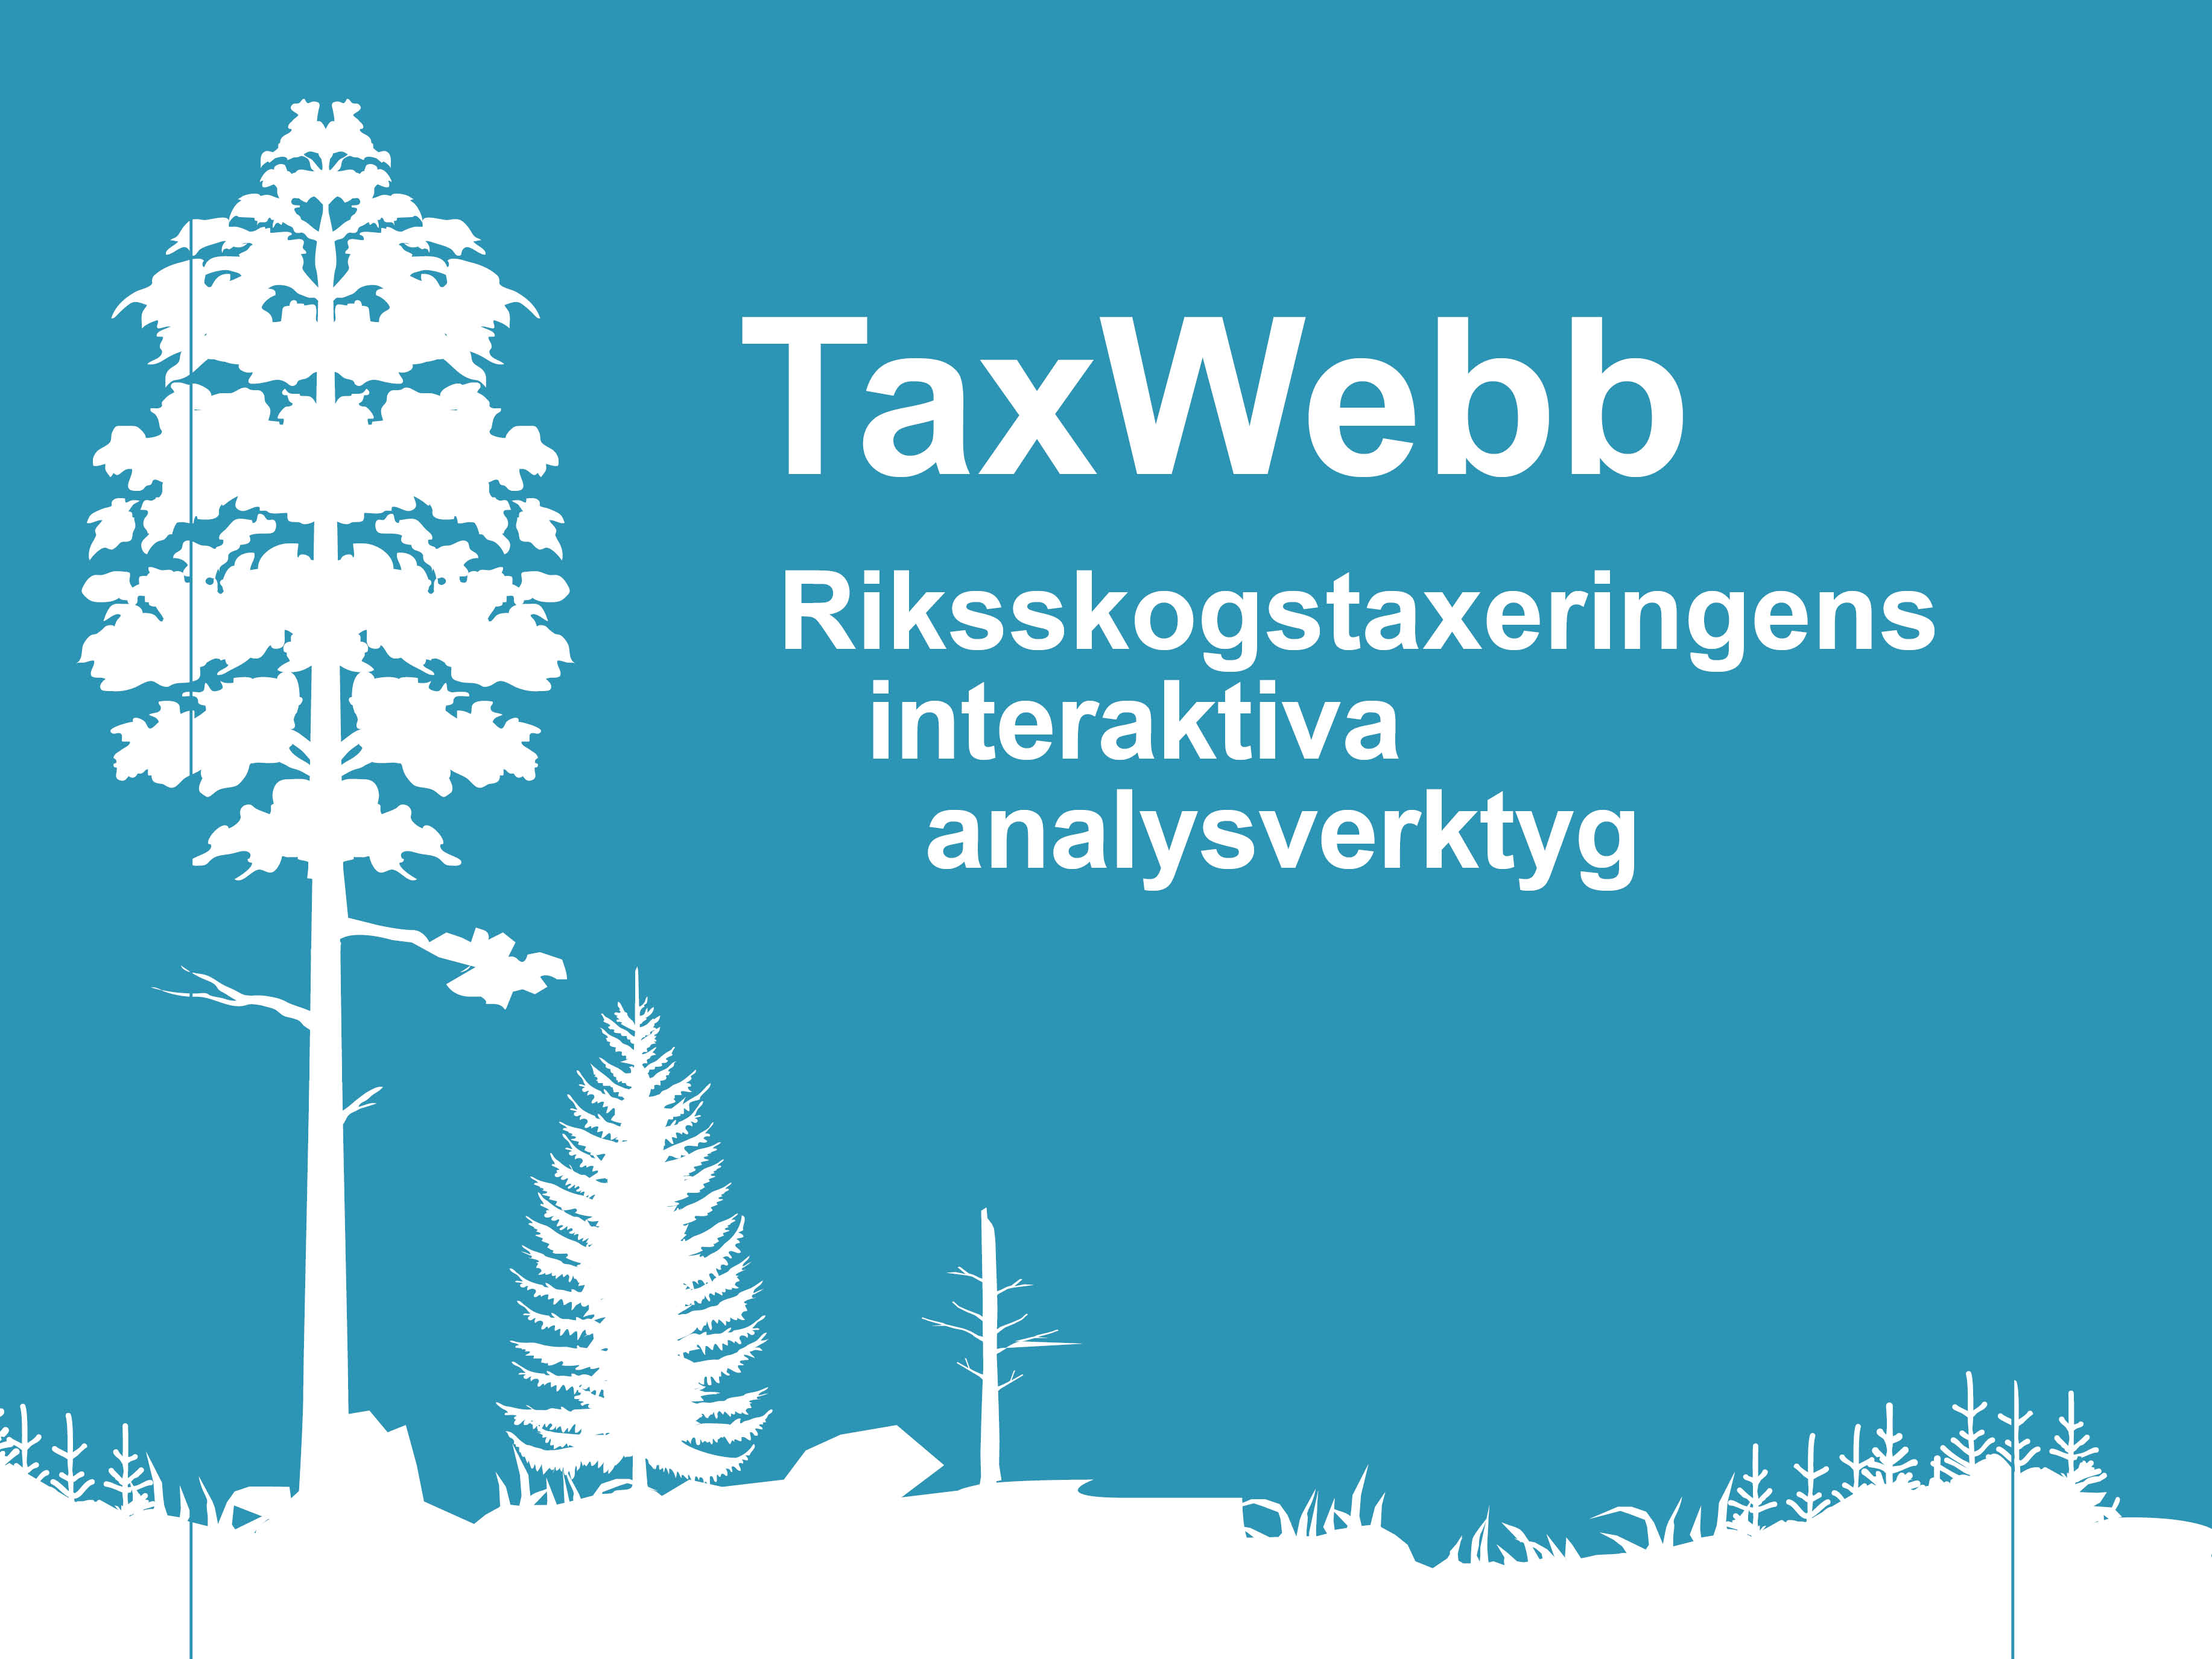 TaxWebb- Riksskogstaxeringens interaktiva analysverktyg